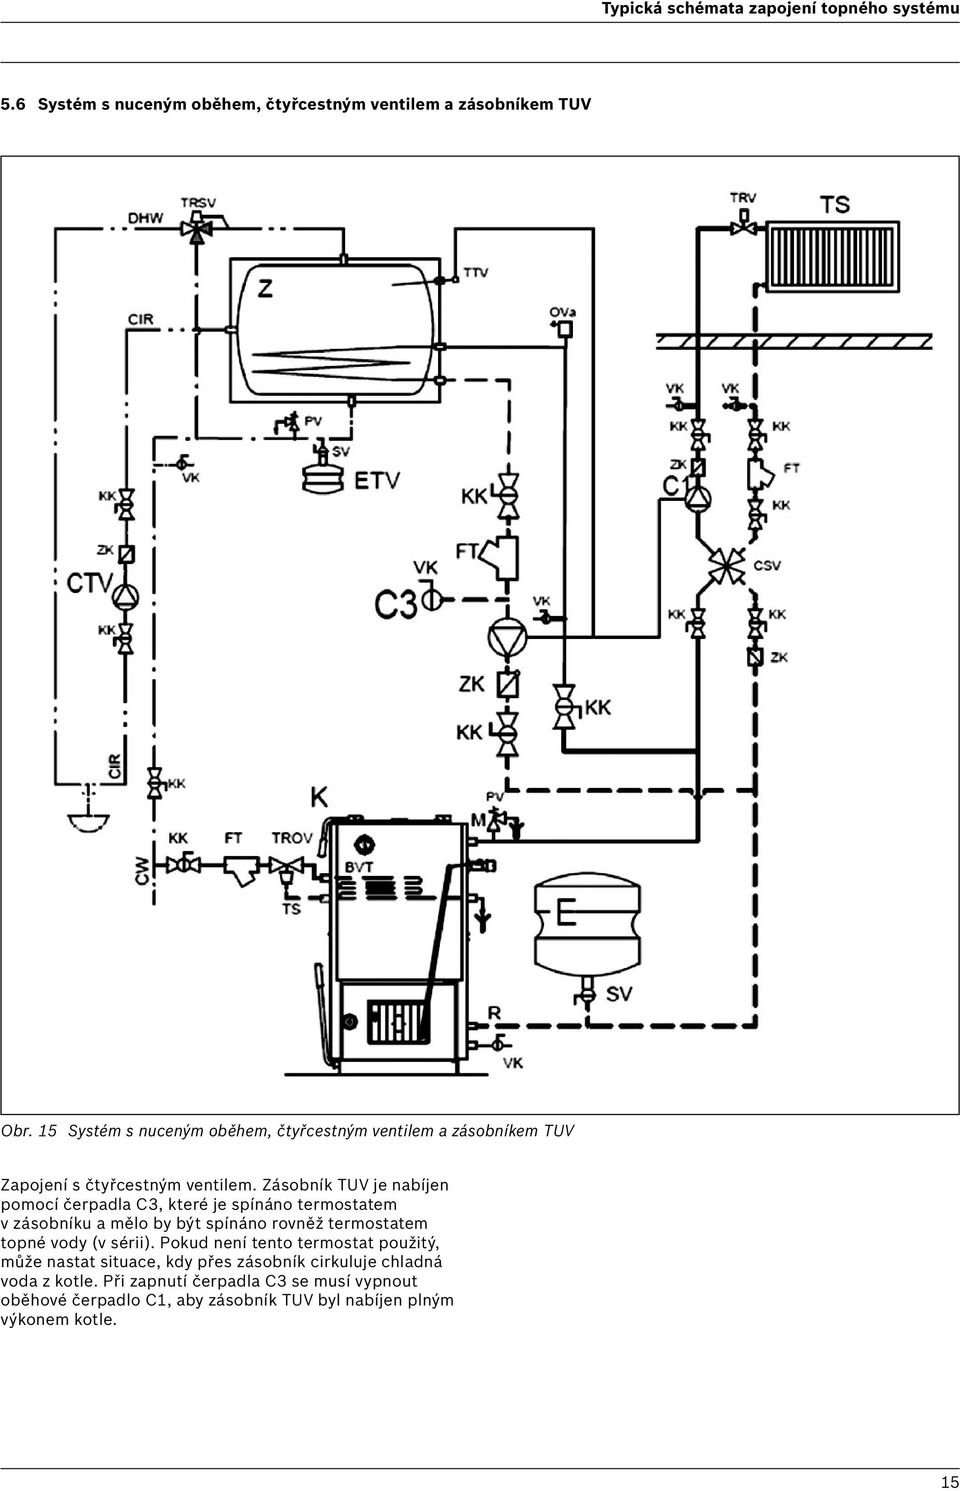 Zásobník TUV je nabíjen pomocí čerpadla C3, které je spínáno termostatem v zásobníku a mělo by být spínáno rovněž termostatem topné vody (v